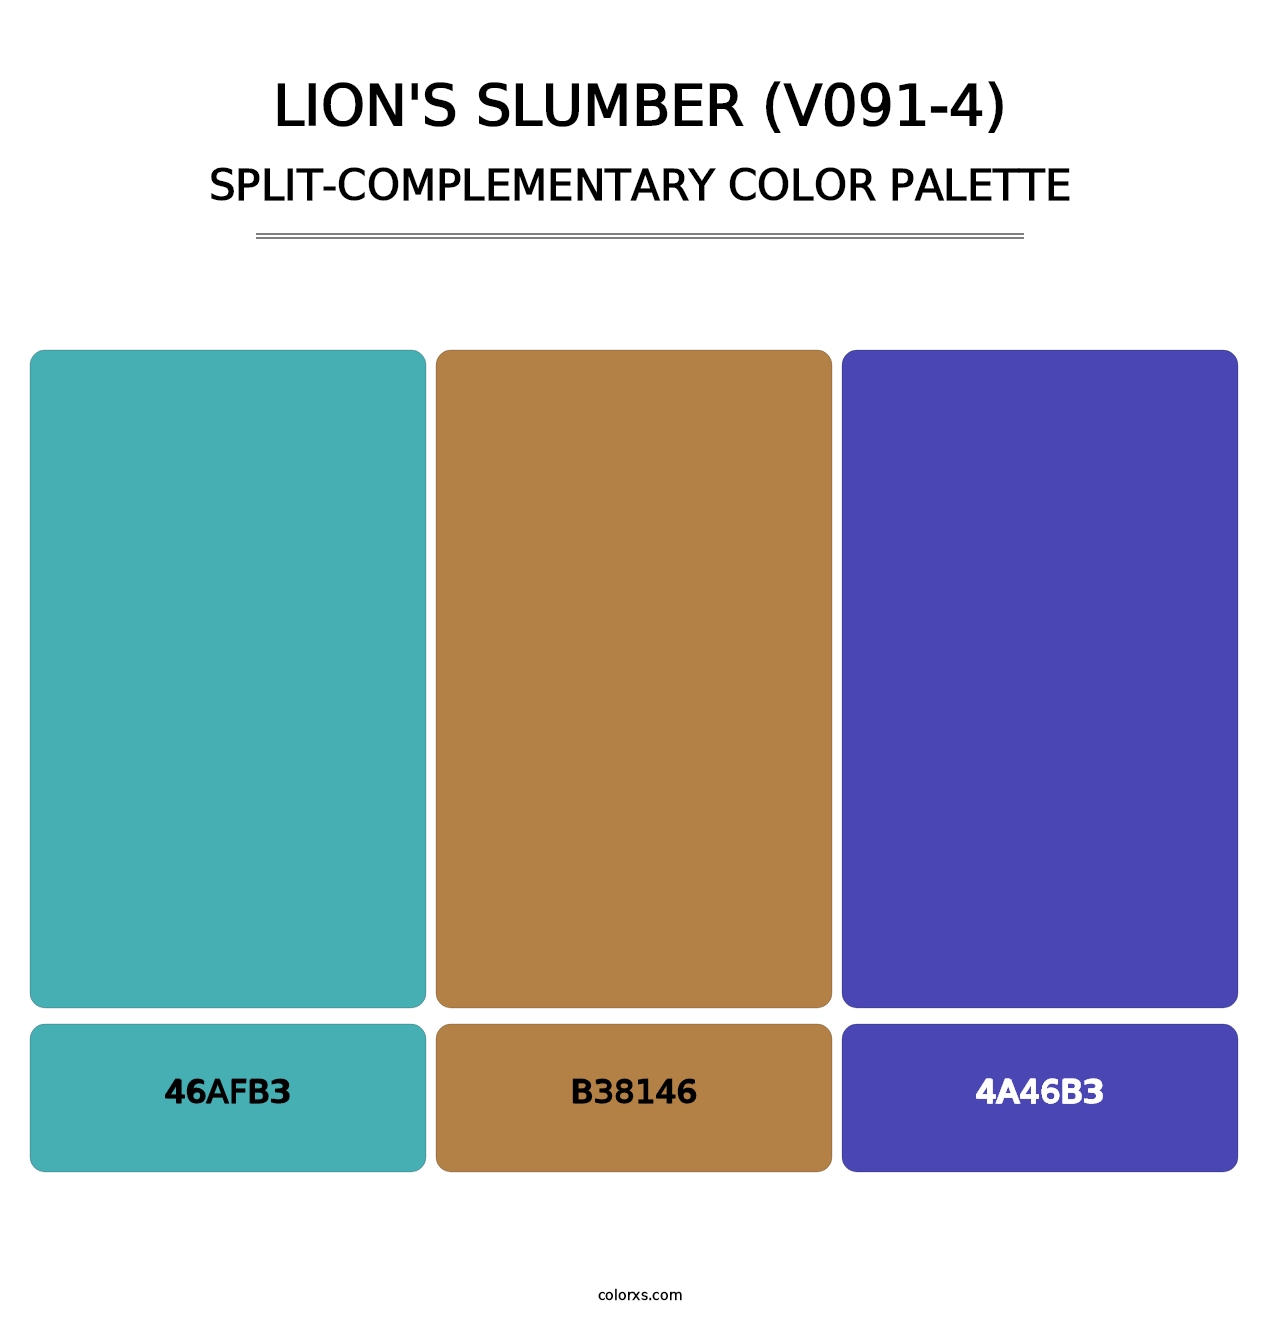 Lion's Slumber (V091-4) - Split-Complementary Color Palette